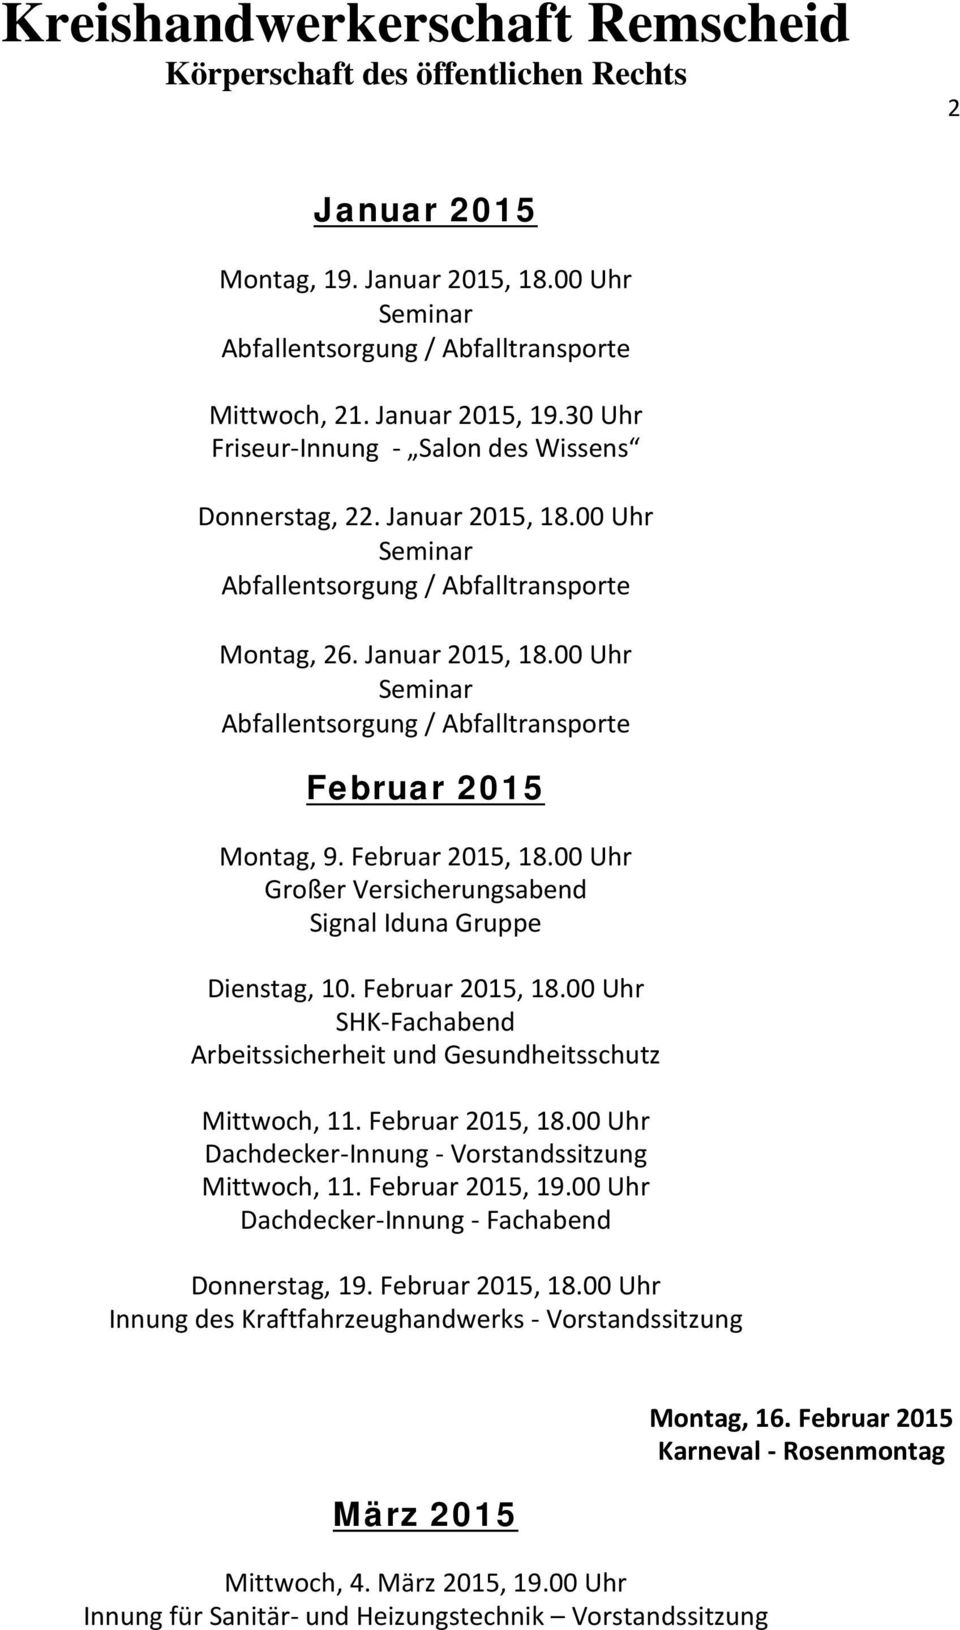 Februar 2015, 18.00 Uhr Dachdecker-Innung - Vorstandssitzung Mittwoch, 11. Februar 2015, 19.00 Uhr Dachdecker-Innung - Fachabend Donnerstag, 19. Februar 2015, 18.